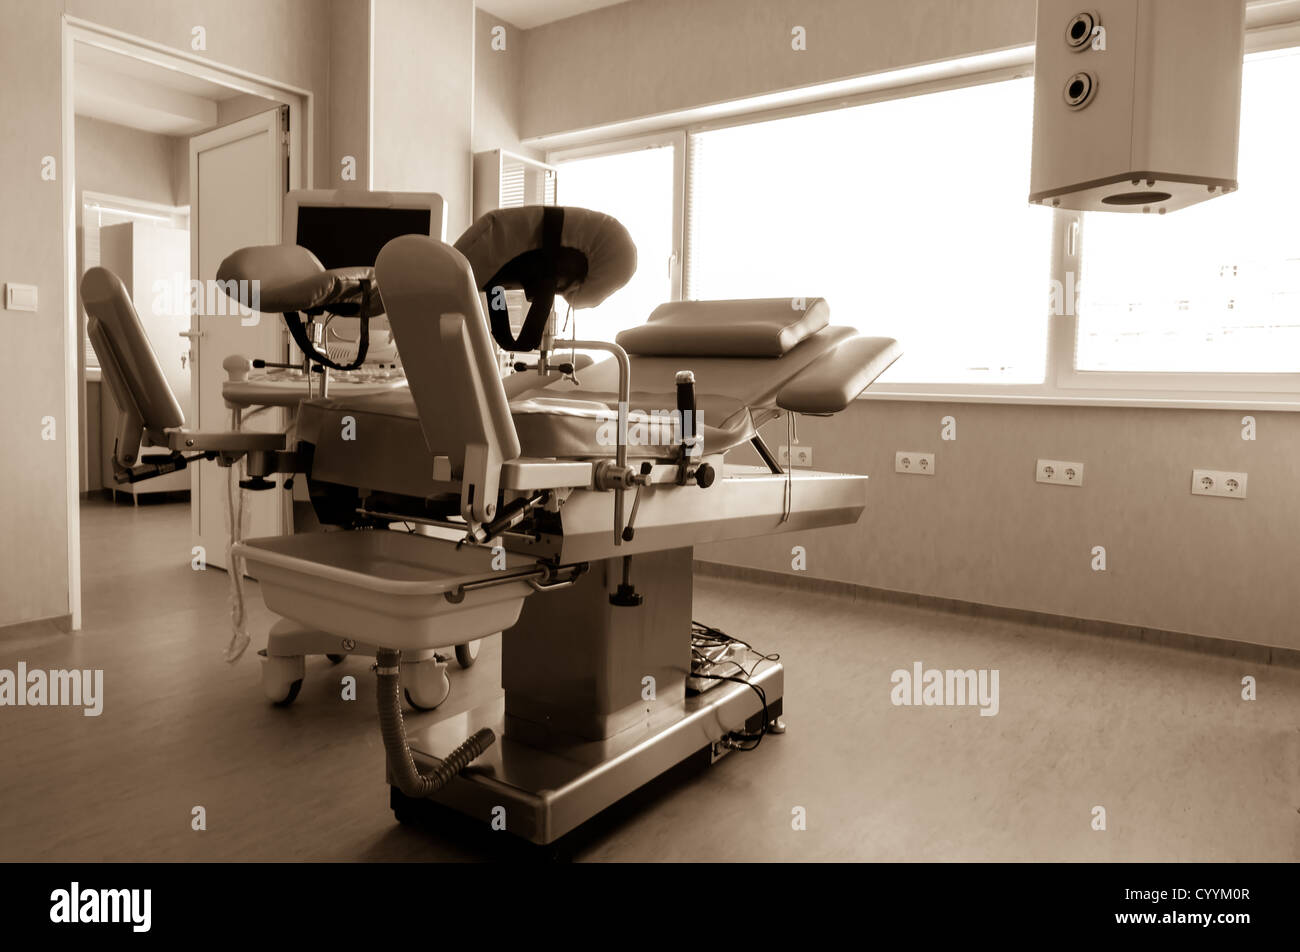 Medico-diagnostico sala apparecchiature. Terapeutico e diagnostico a camere con attrezzature mediche. Foto Stock